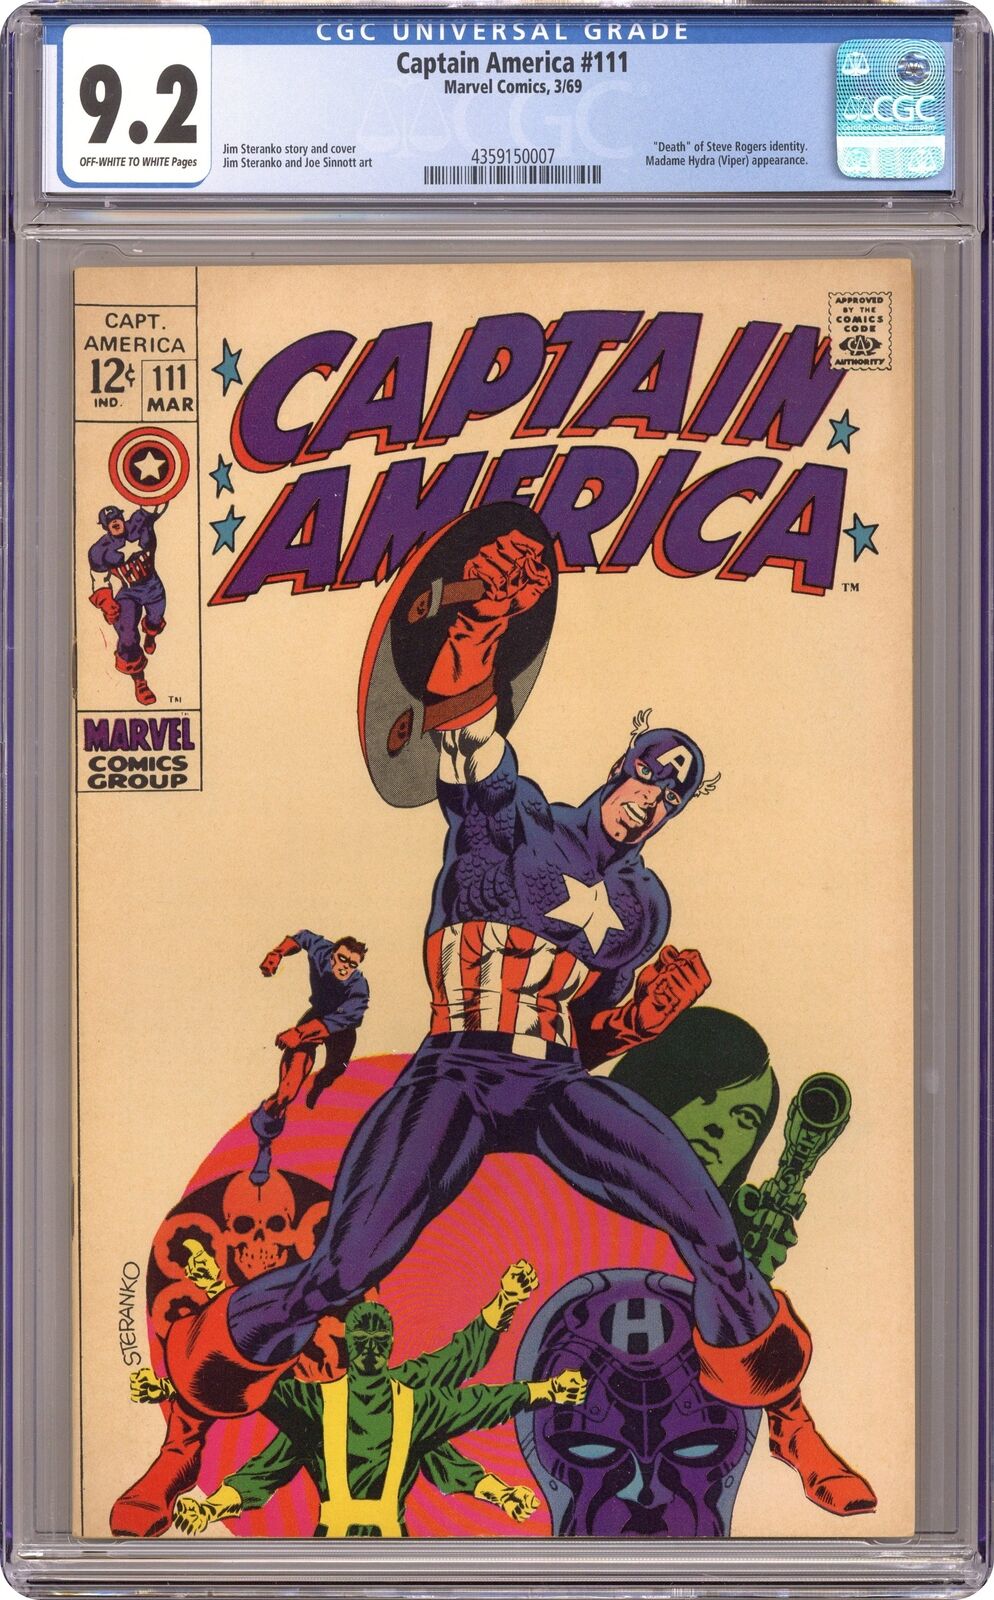 Captain America #111 CGC 9.2 1969 4359150007